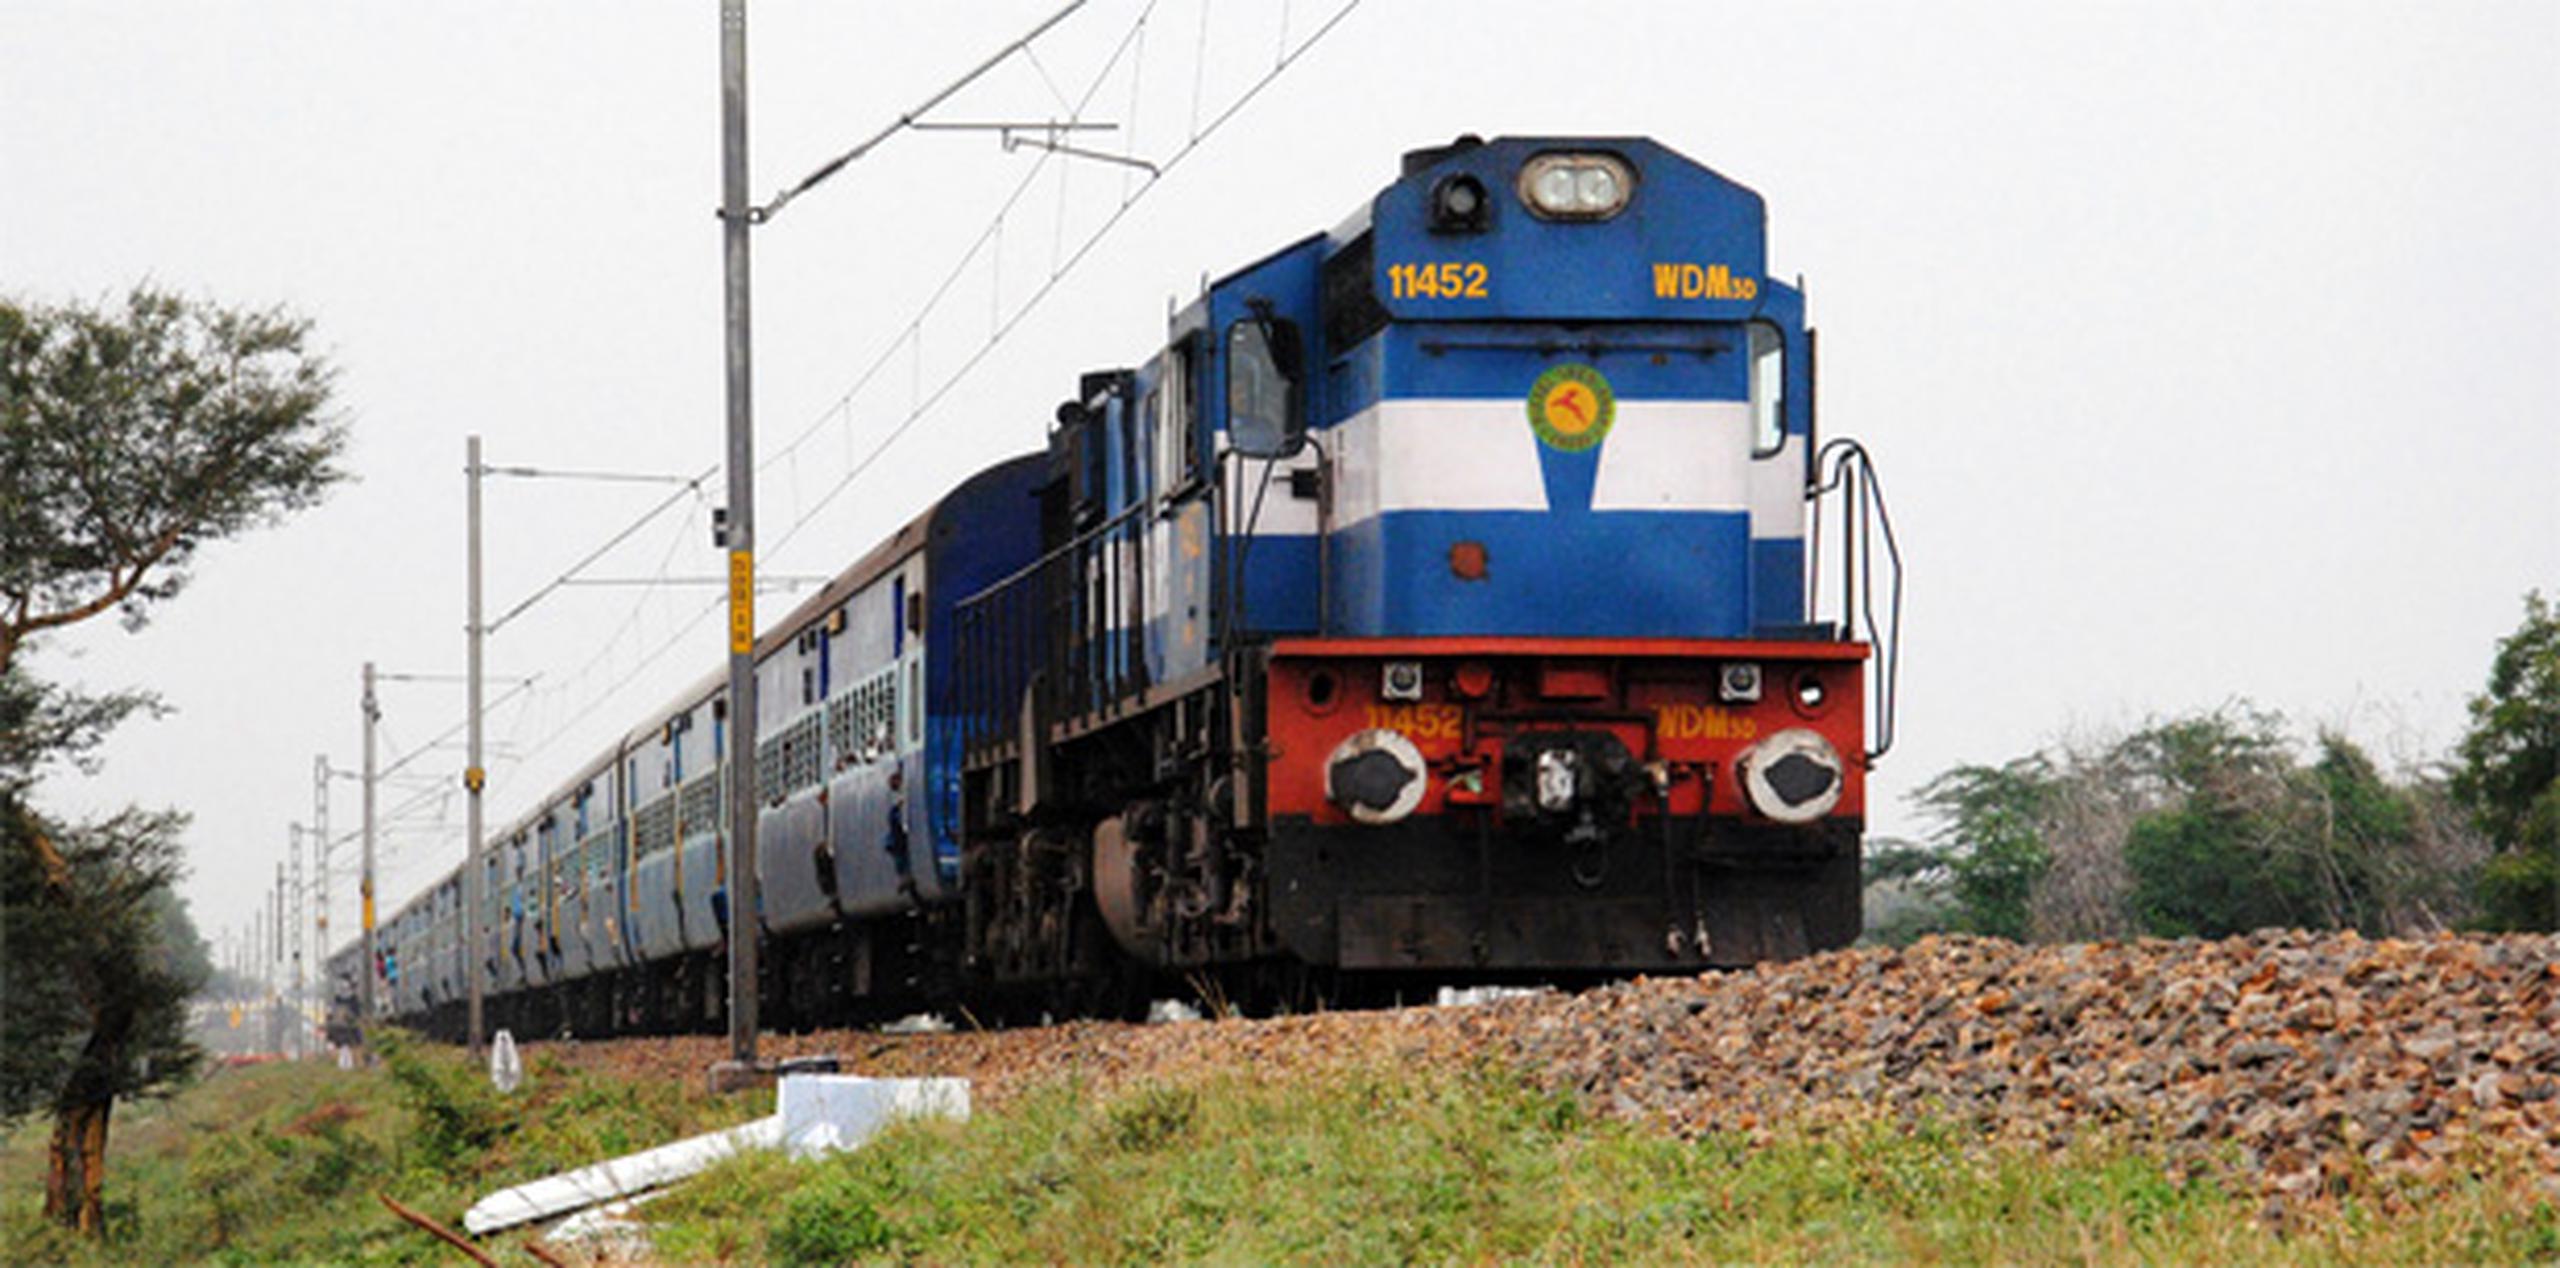 Las estaciones, instalaciones y vías del sistema de ferrocarriles suelen ser fácilmente accesibles y tienen escasa vigilancia en la India.